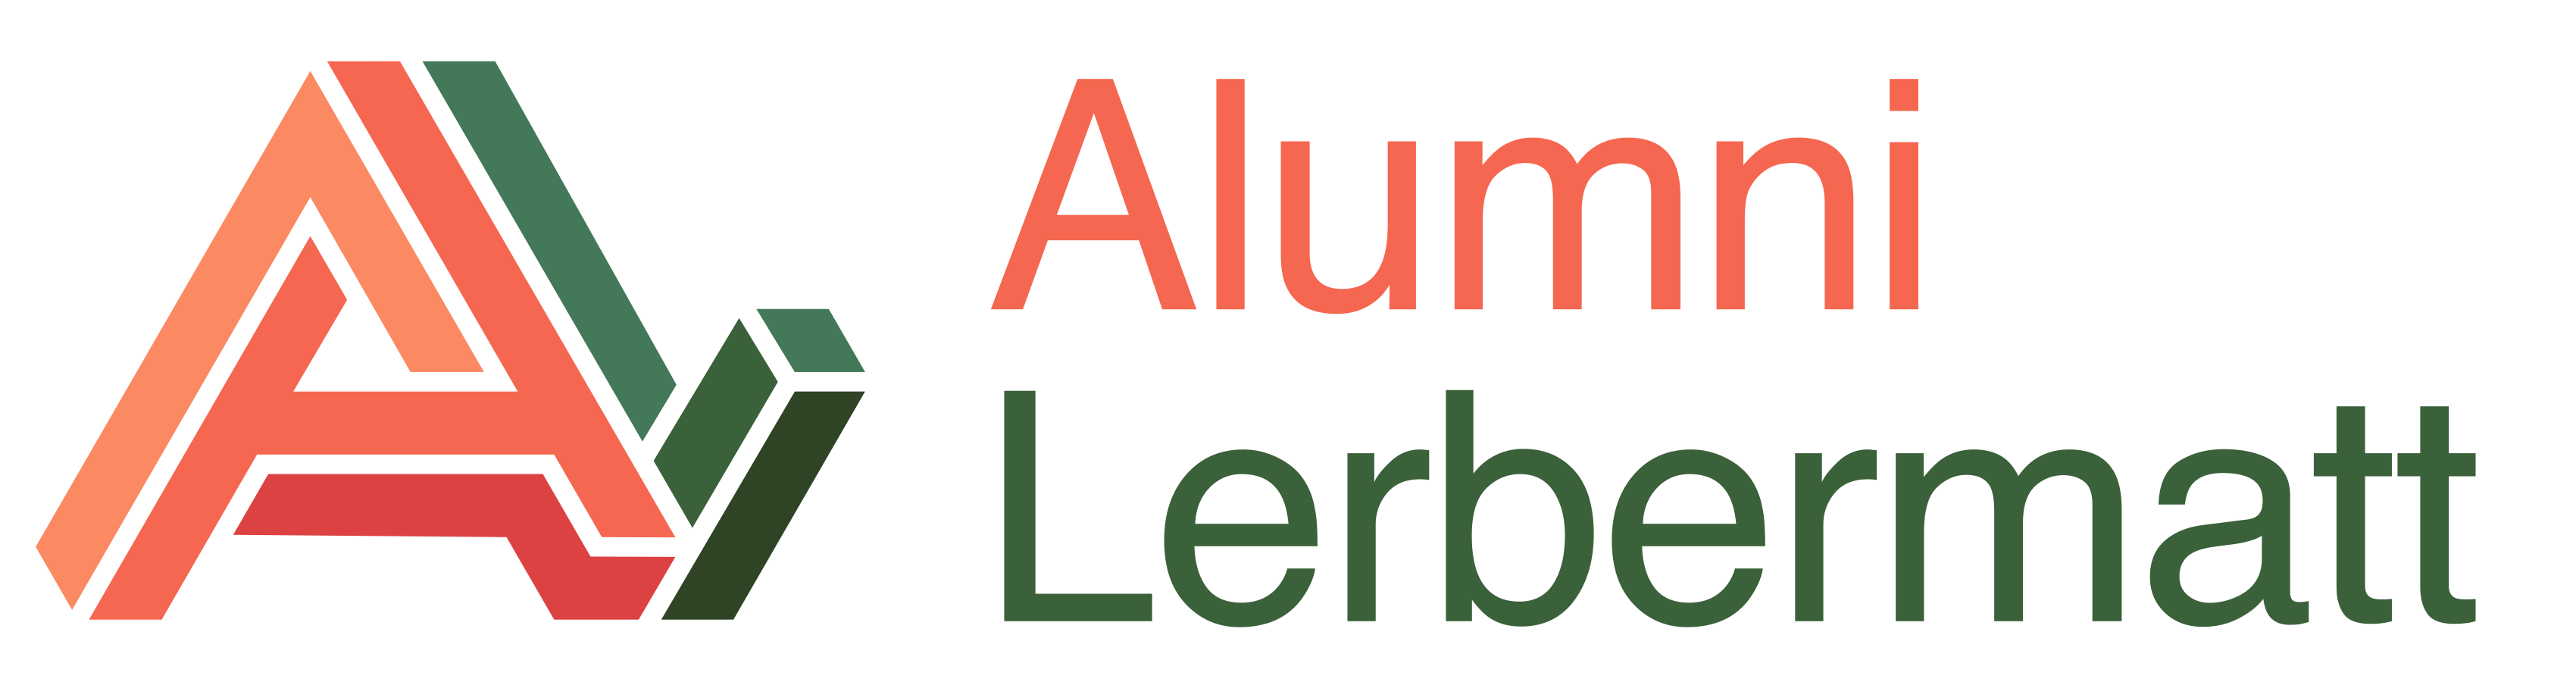 Alumni Lerbermatt